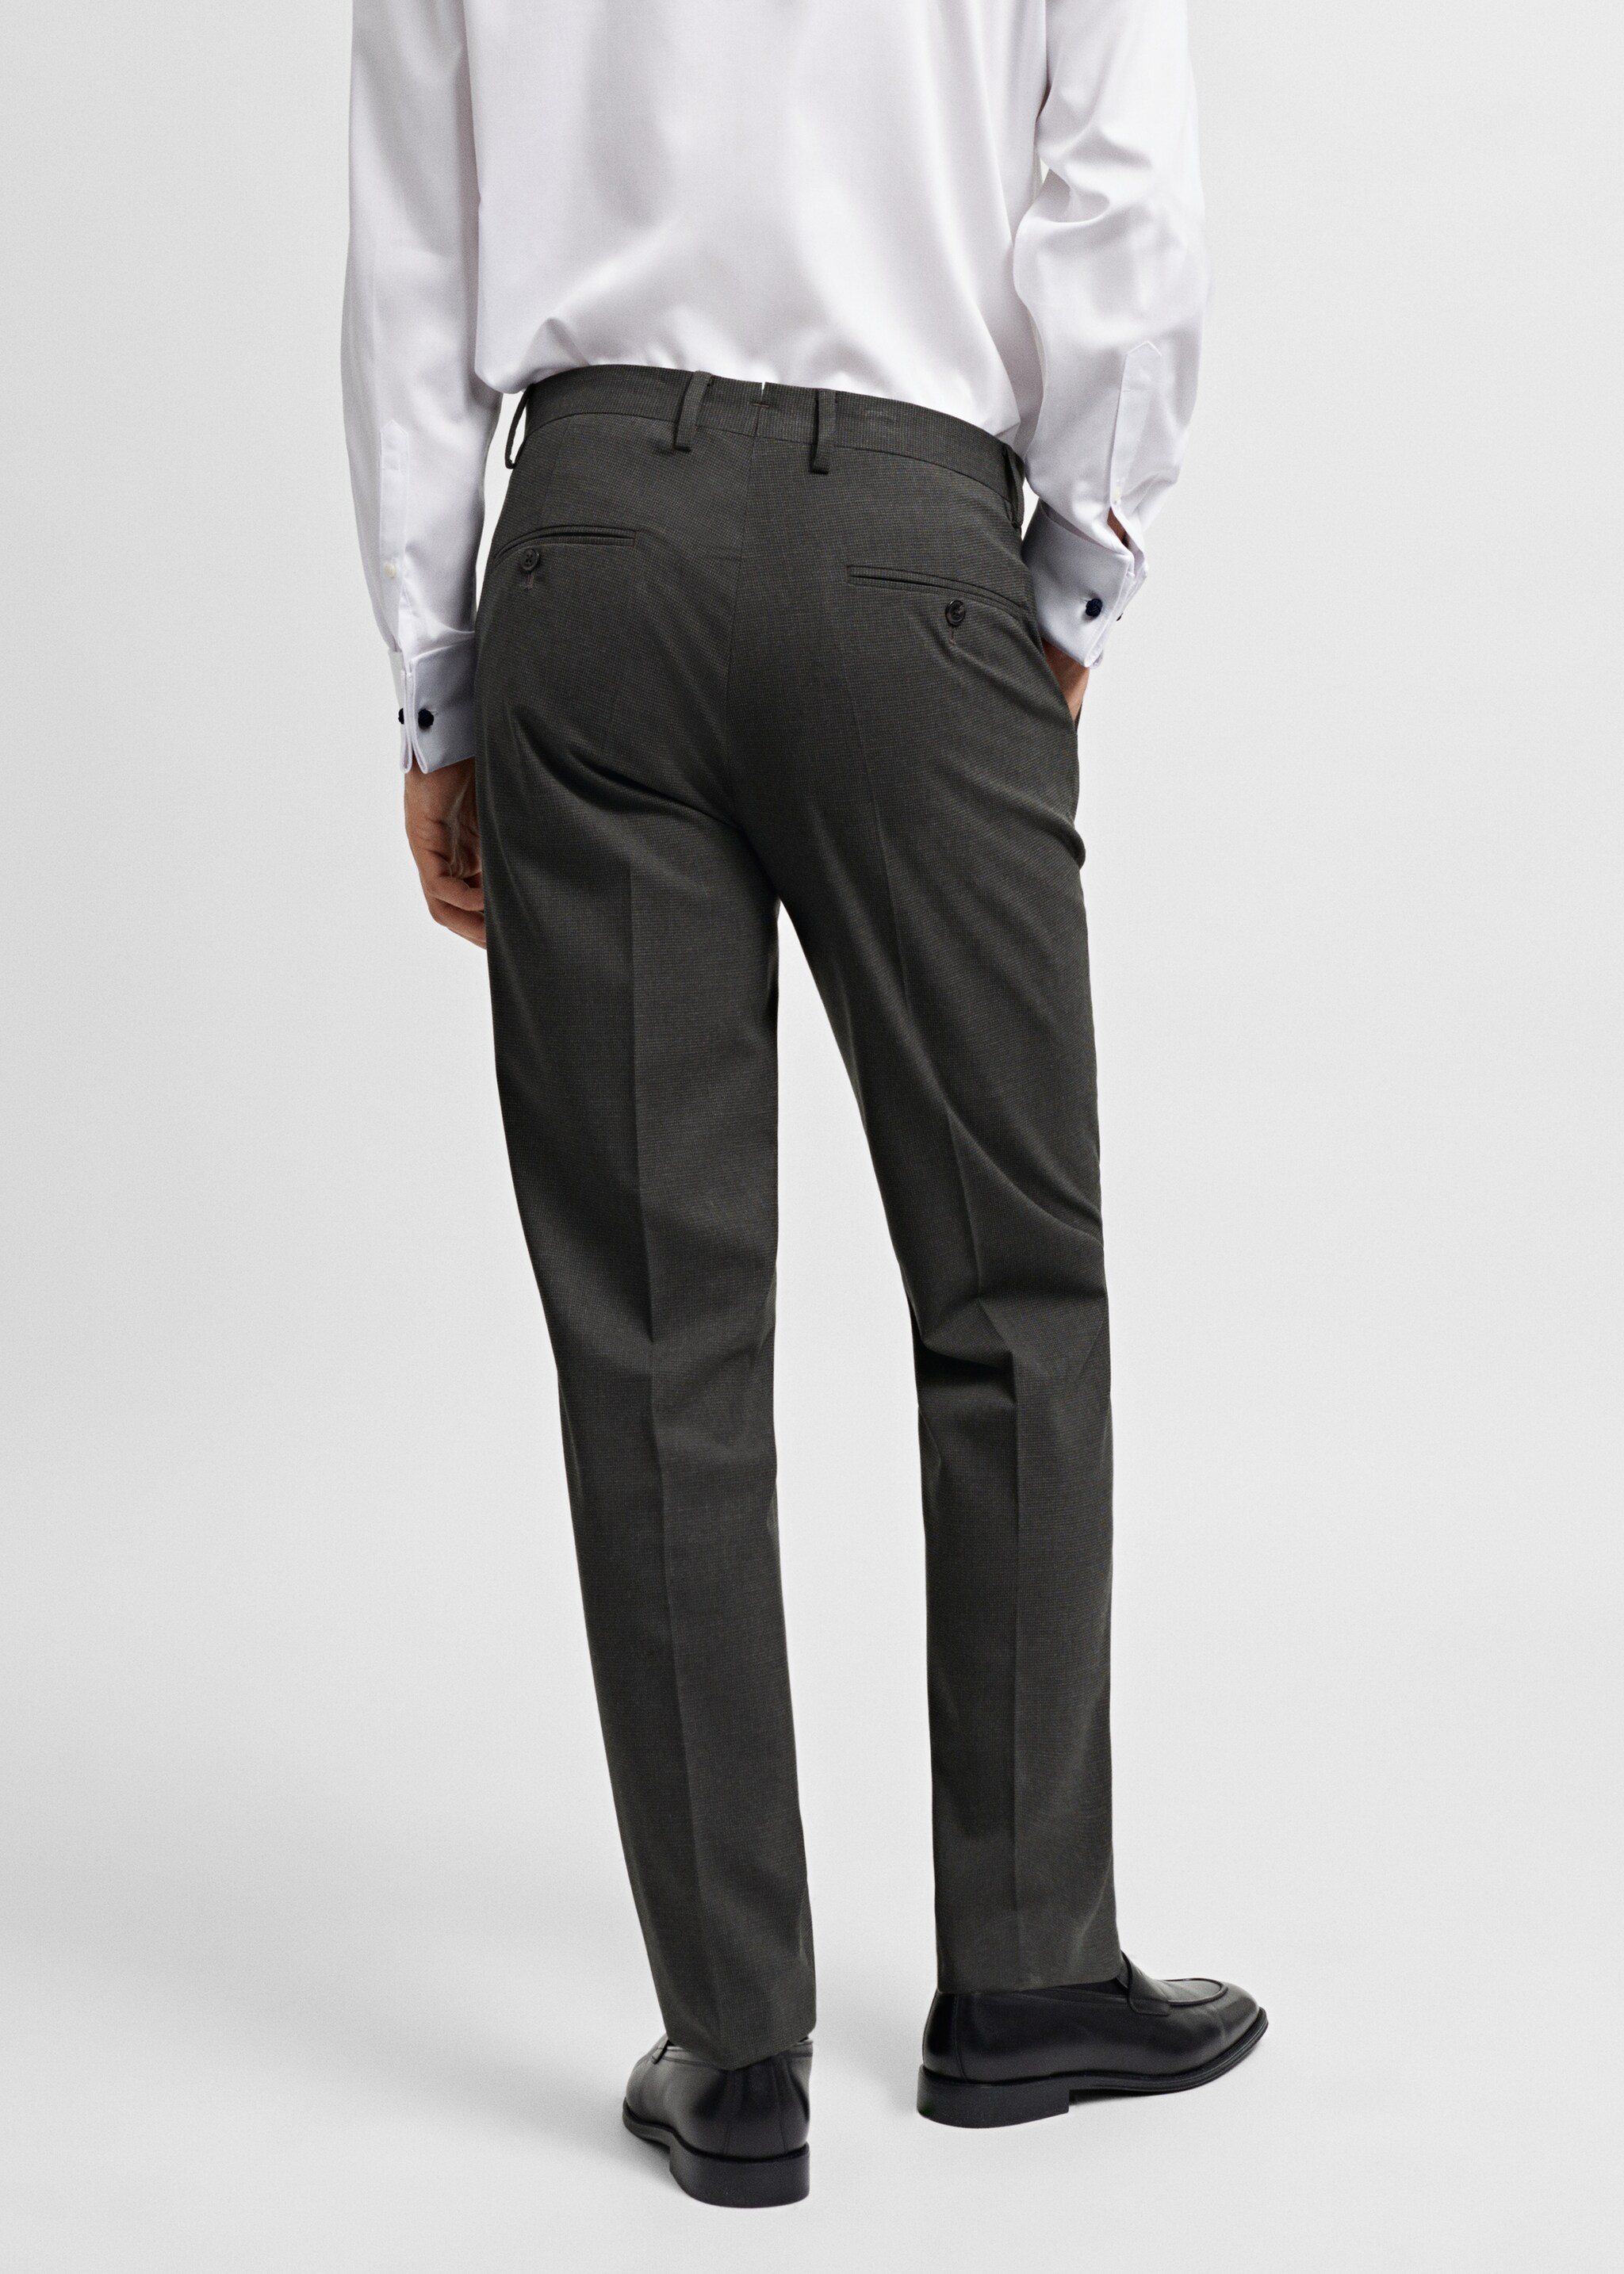 Παντελόνι κοστουμιού slim fit ύφασμα stretch - Πίσω όψη προϊόντος